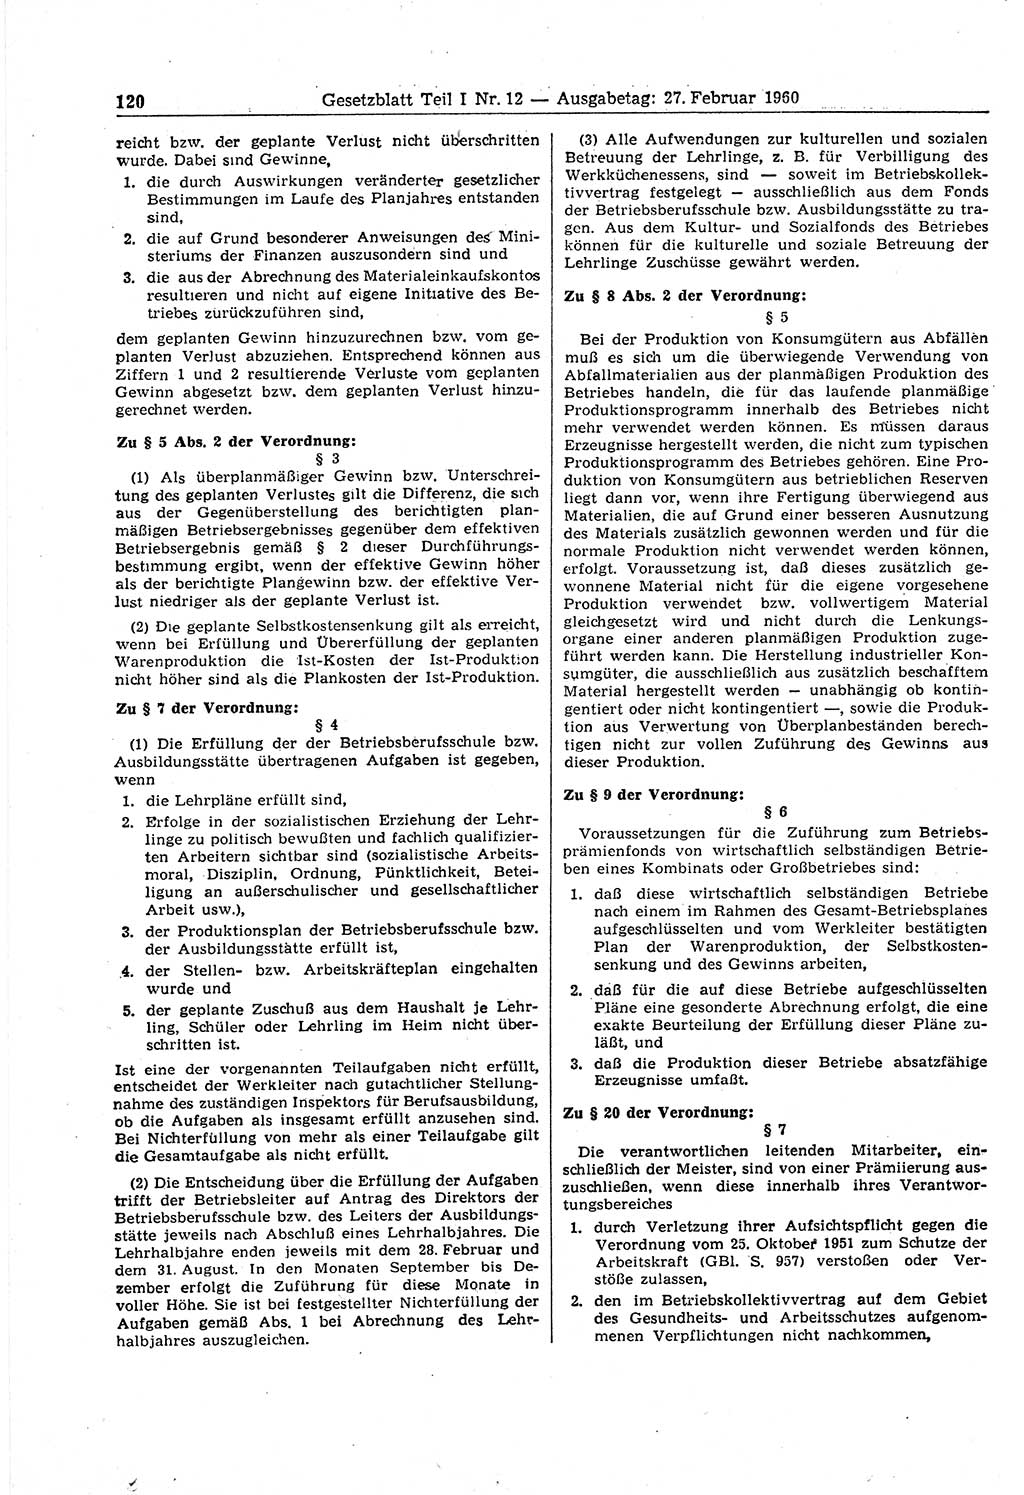 Gesetzblatt (GBl.) der Deutschen Demokratischen Republik (DDR) Teil Ⅰ 1960, Seite 120 (GBl. DDR Ⅰ 1960, S. 120)